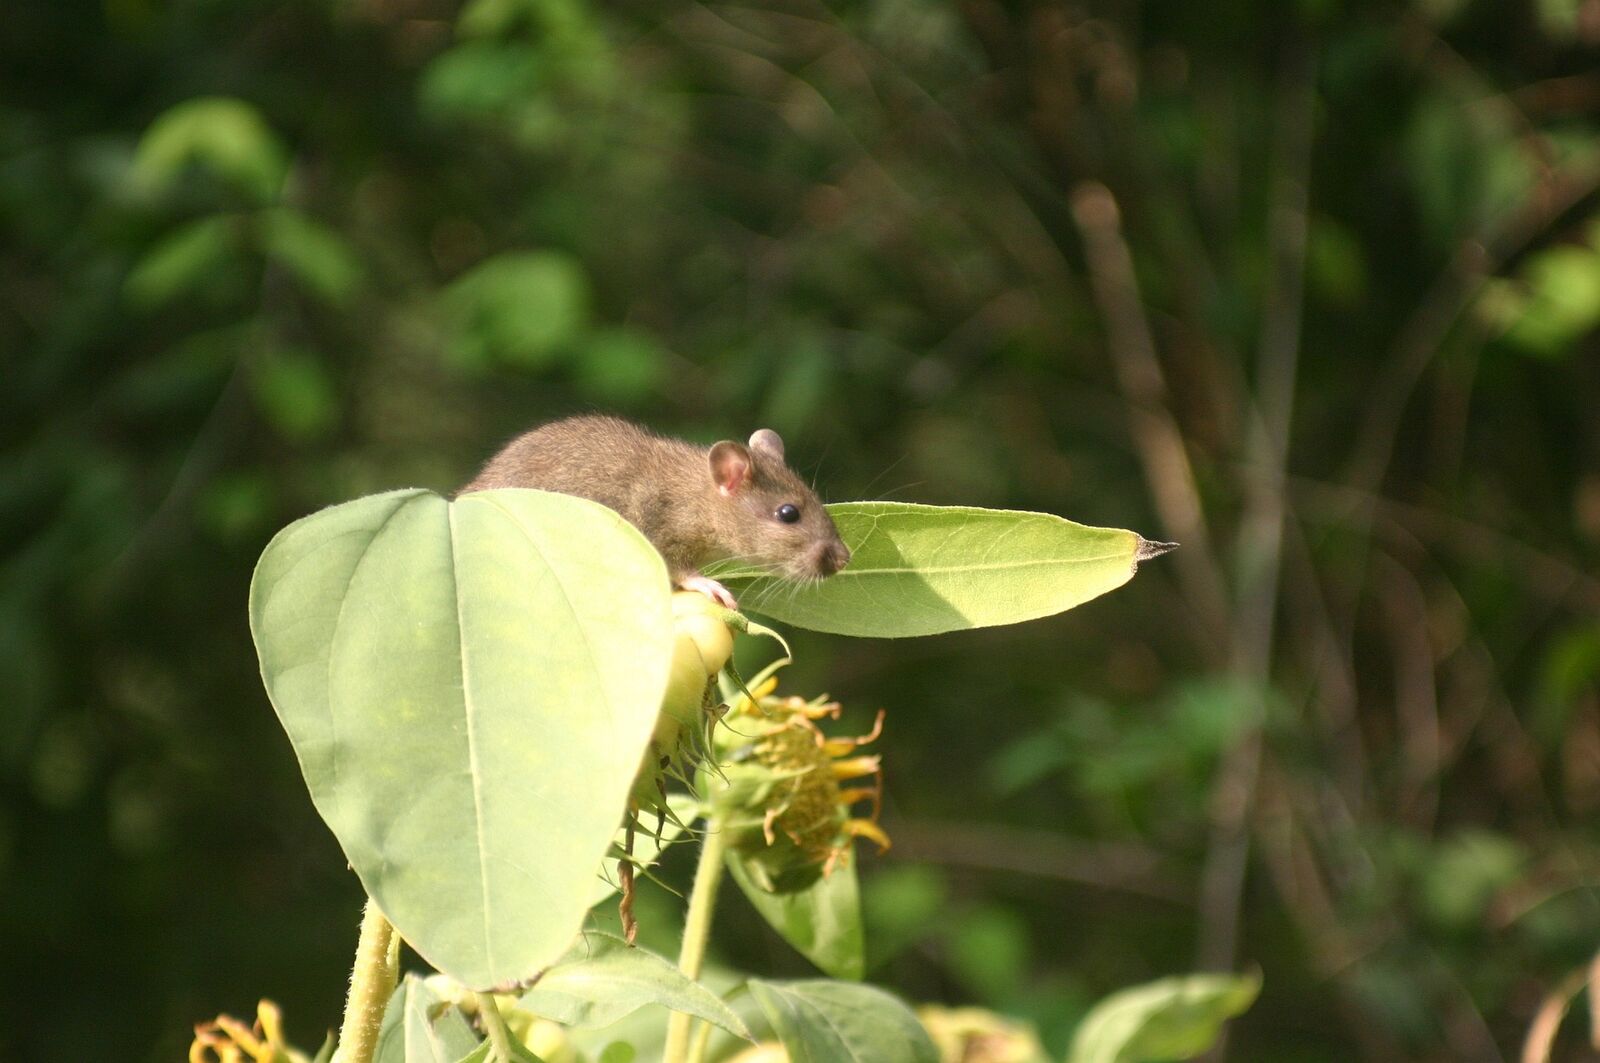 Vole or rat in the garden?